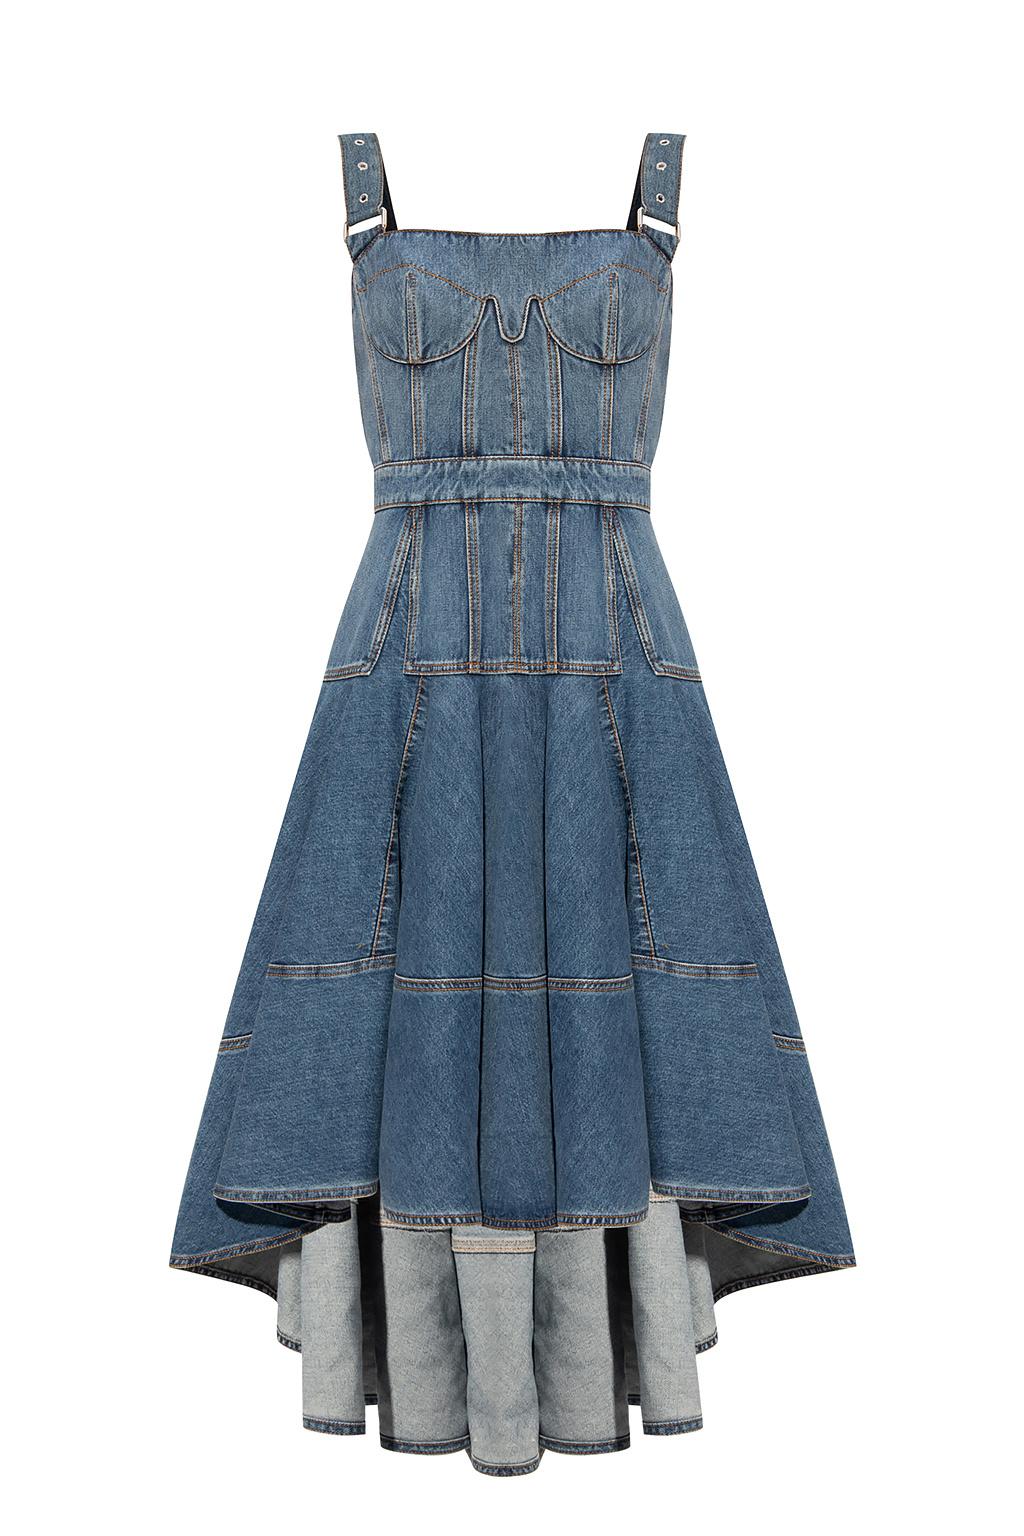 Alexander McQueen Denim Dress With Adjustable Straps in Blue | Lyst